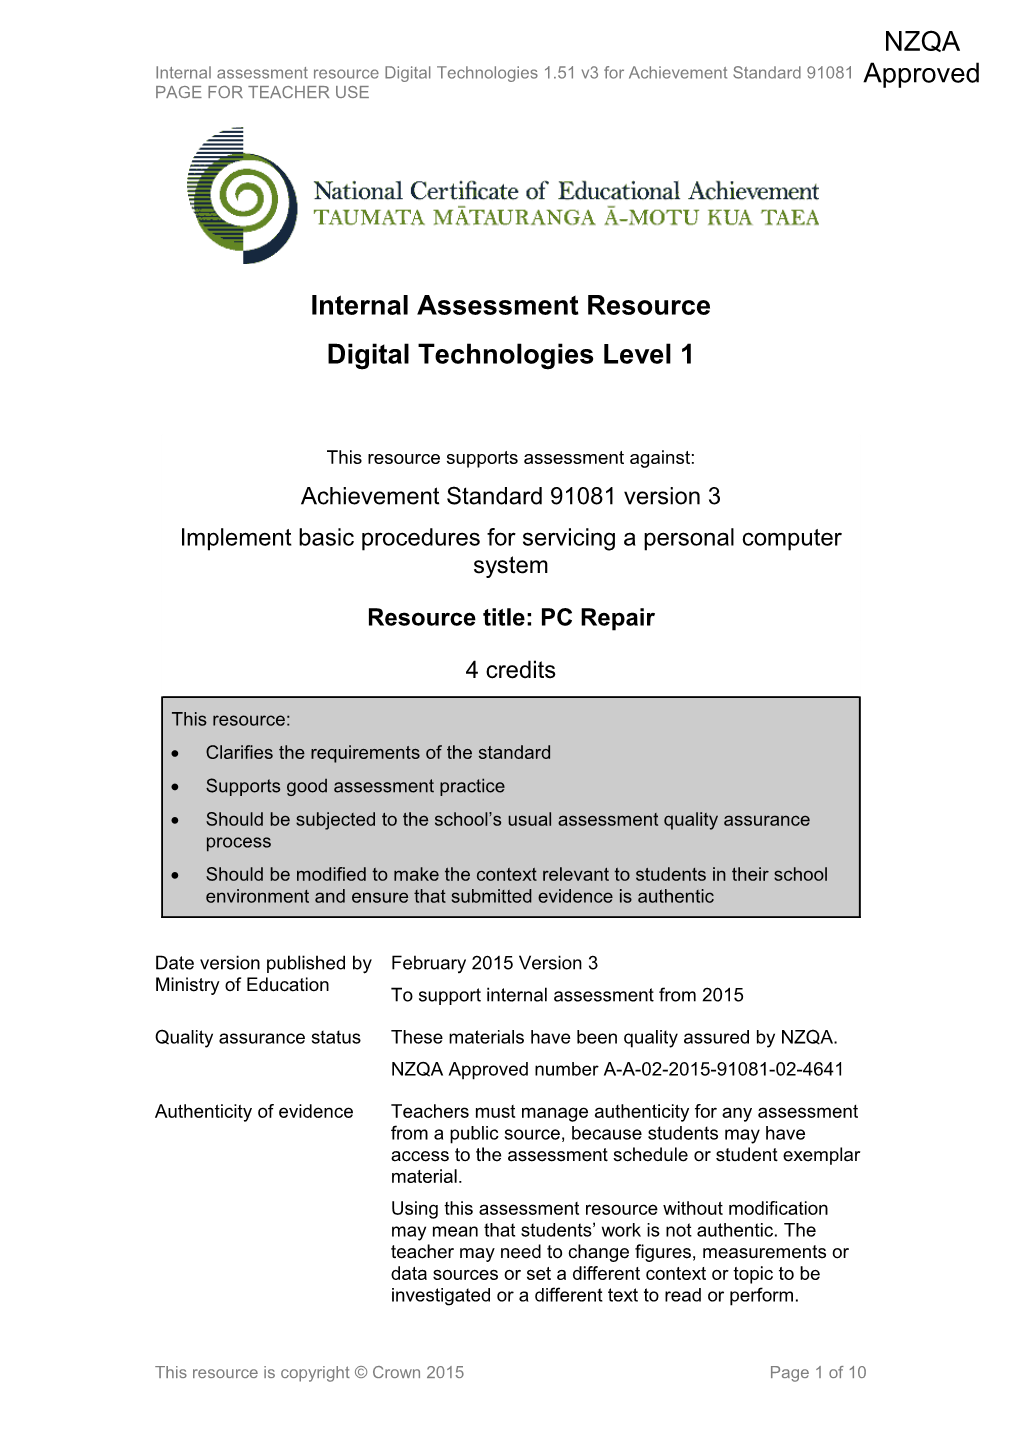 Level 1 Digital Technologies Internal Assessment Resource